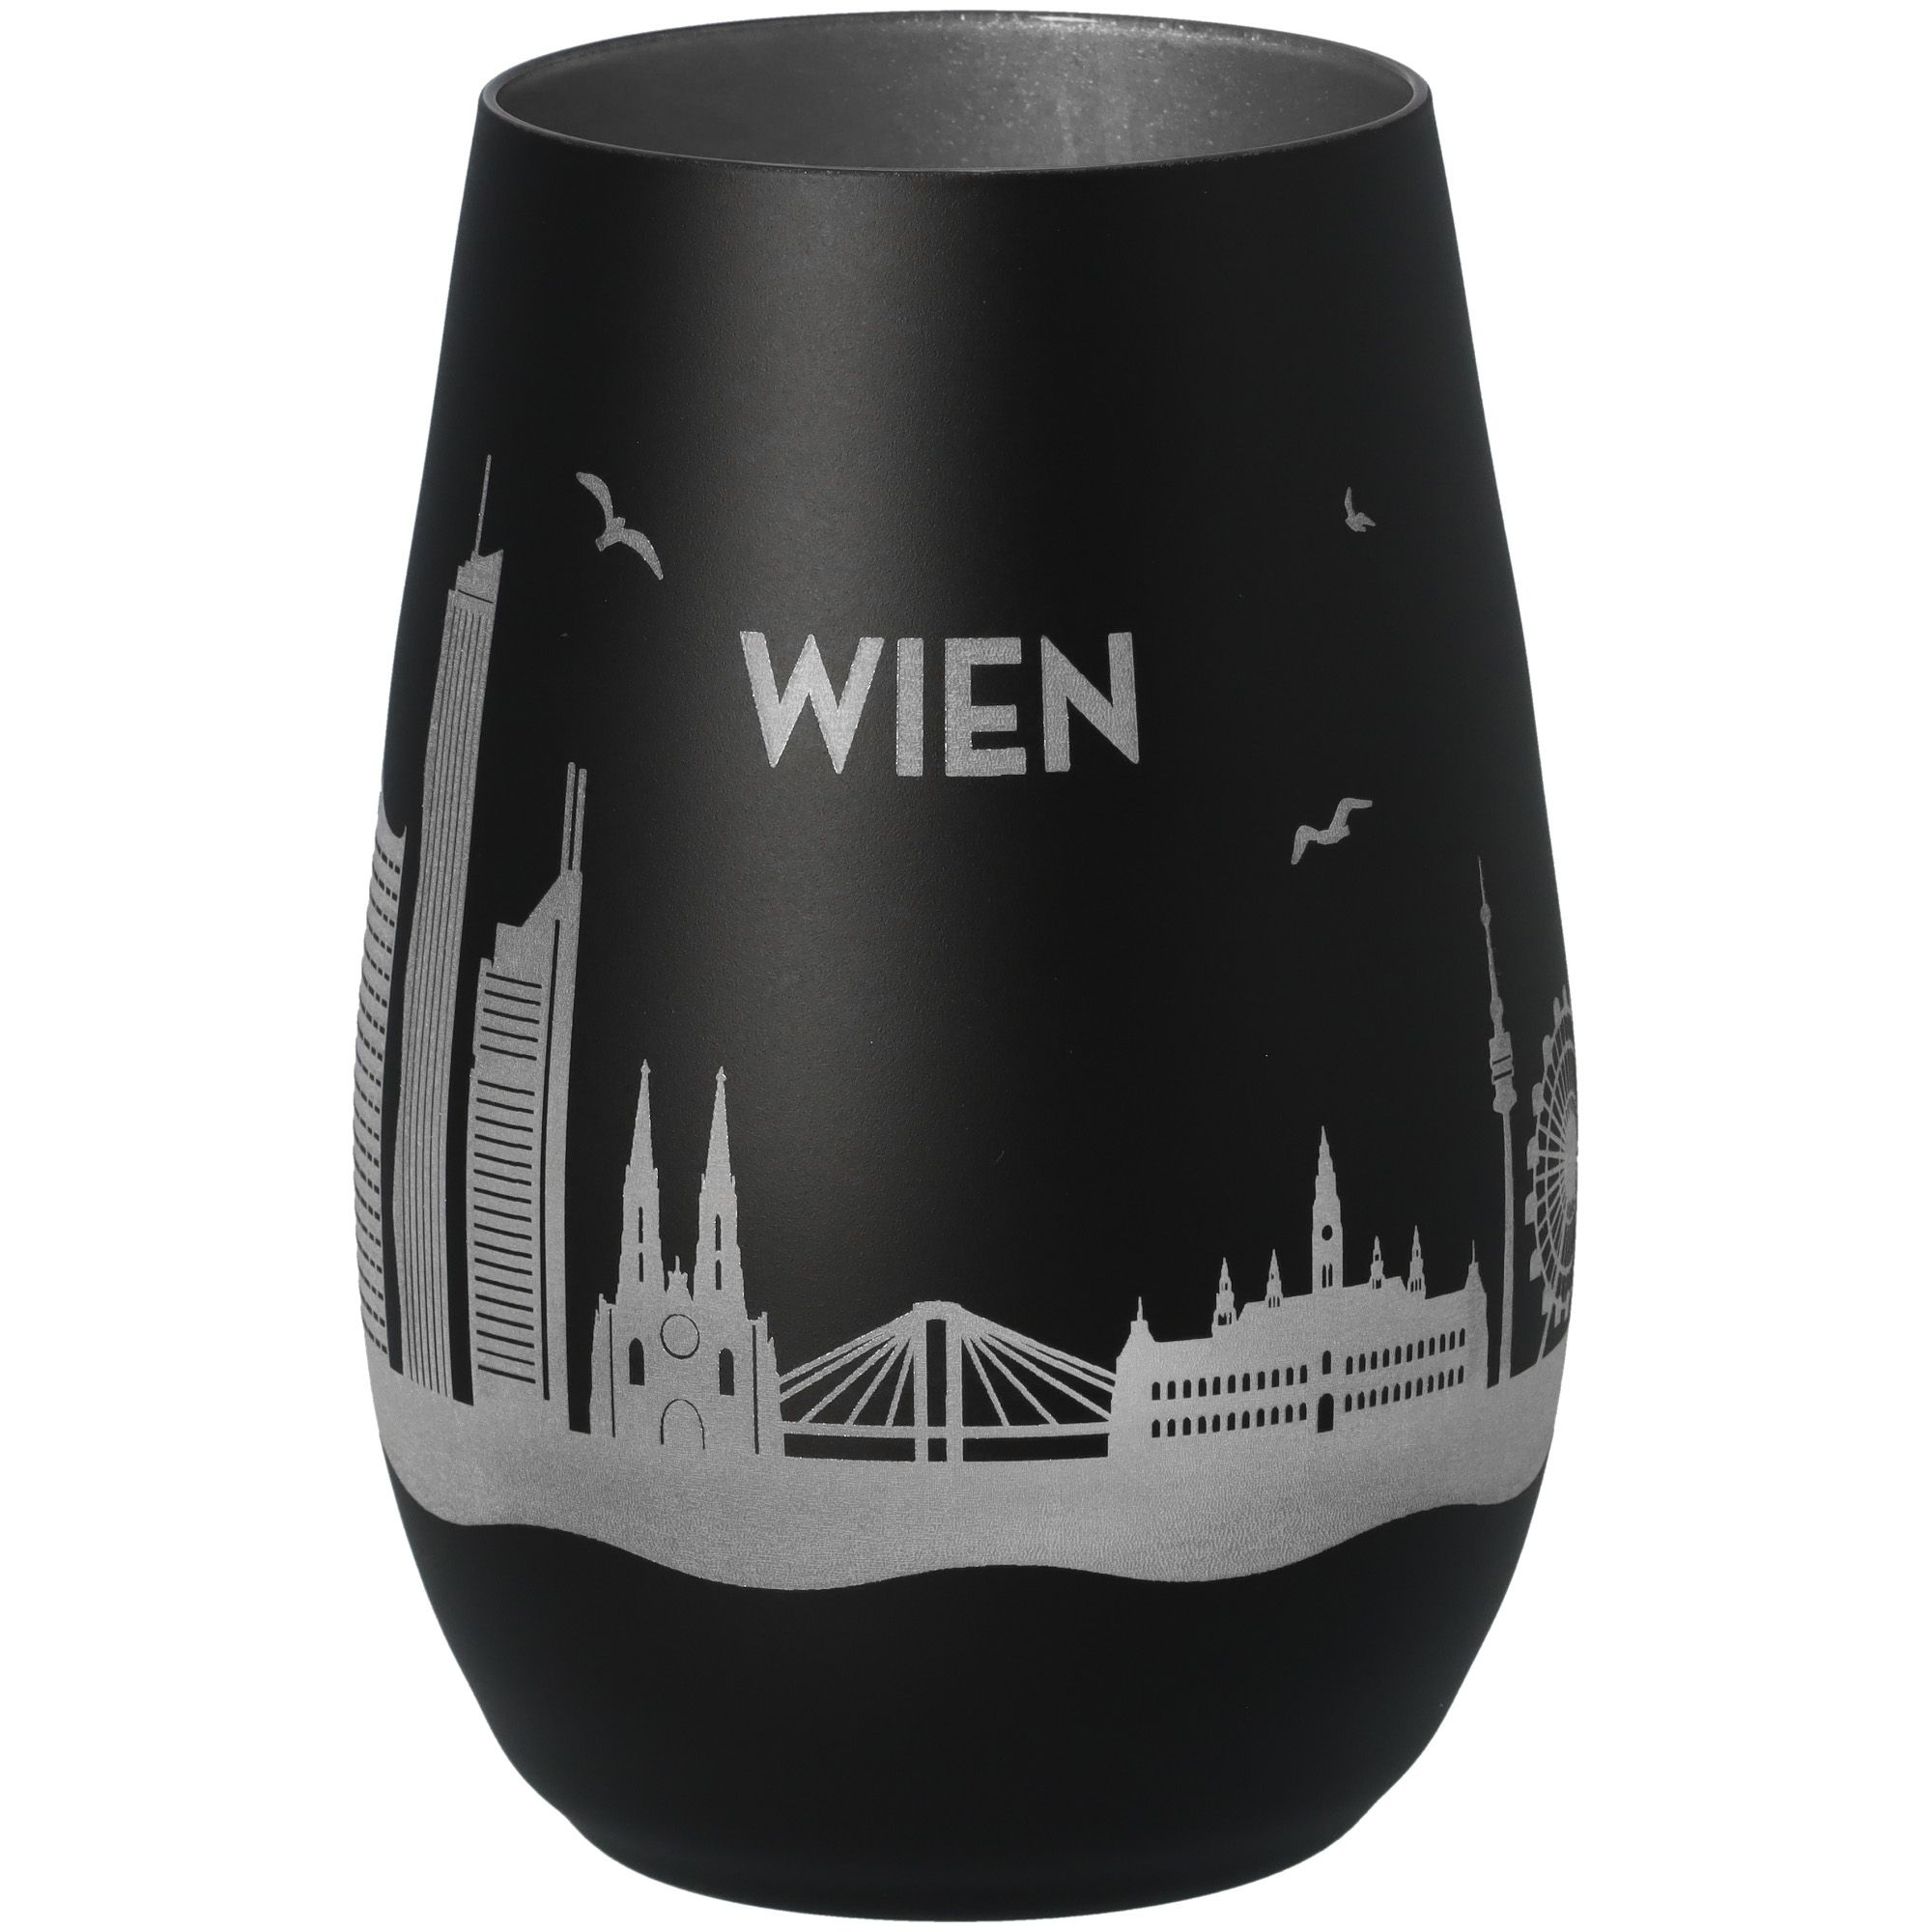 Windlicht Skyline Wien Schwarz/Silber